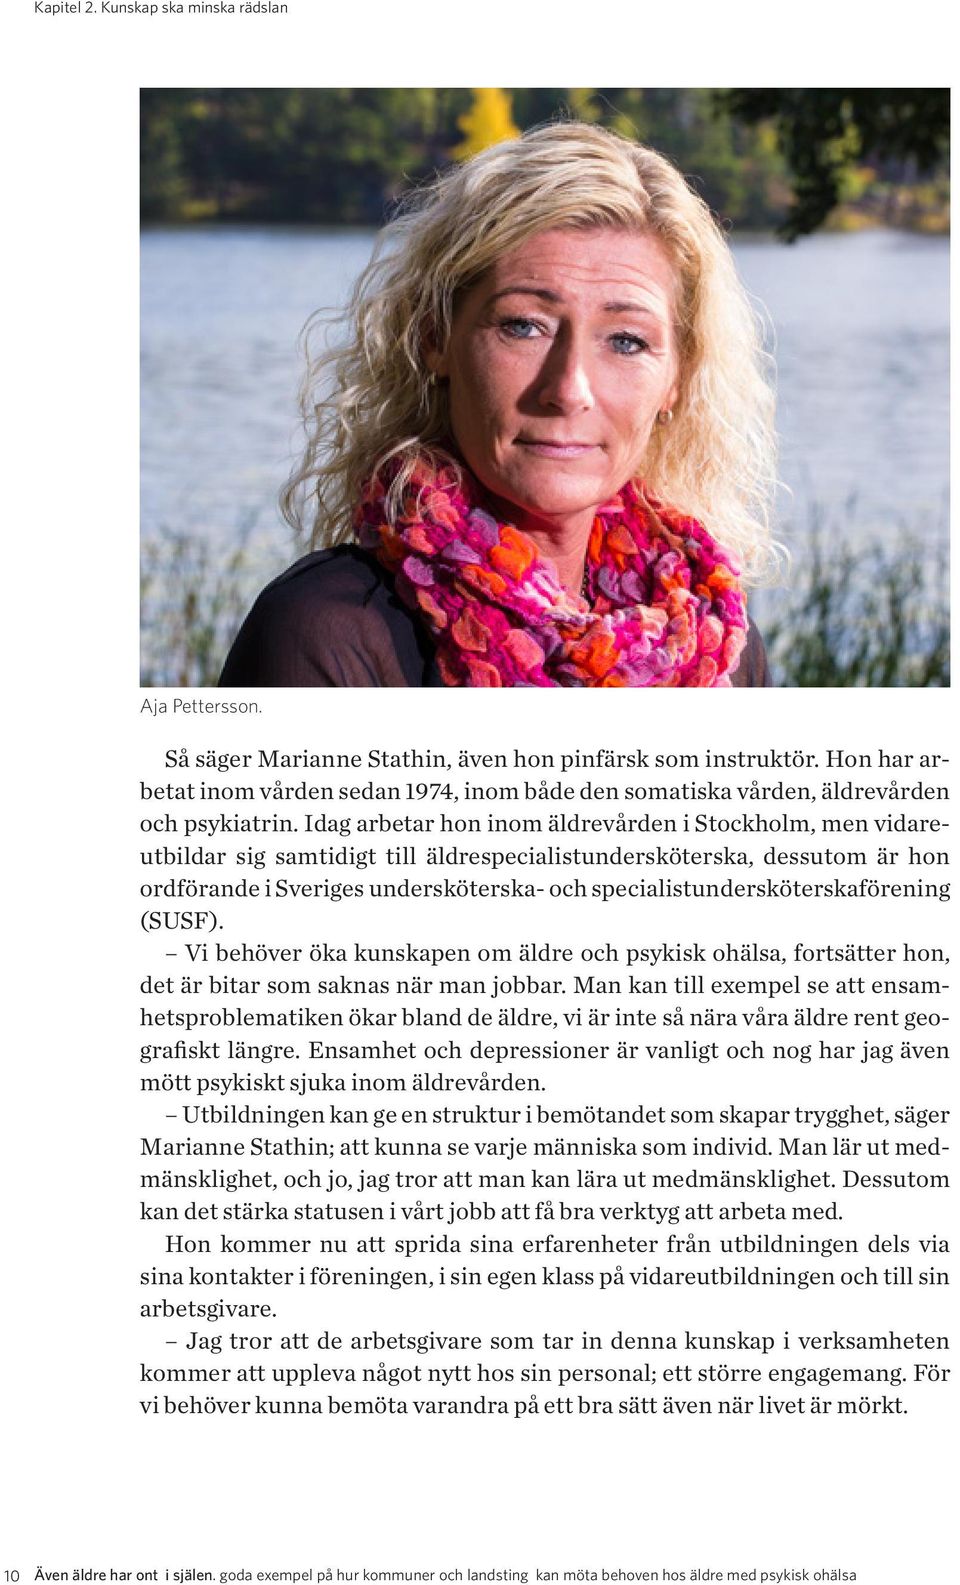 Idag arbetar hon inom äldrevården i Stockholm, men vidareutbildar sig samtidigt till äldrespecialistundersköterska, dessutom är hon ordförande i Sveriges undersköterska- och